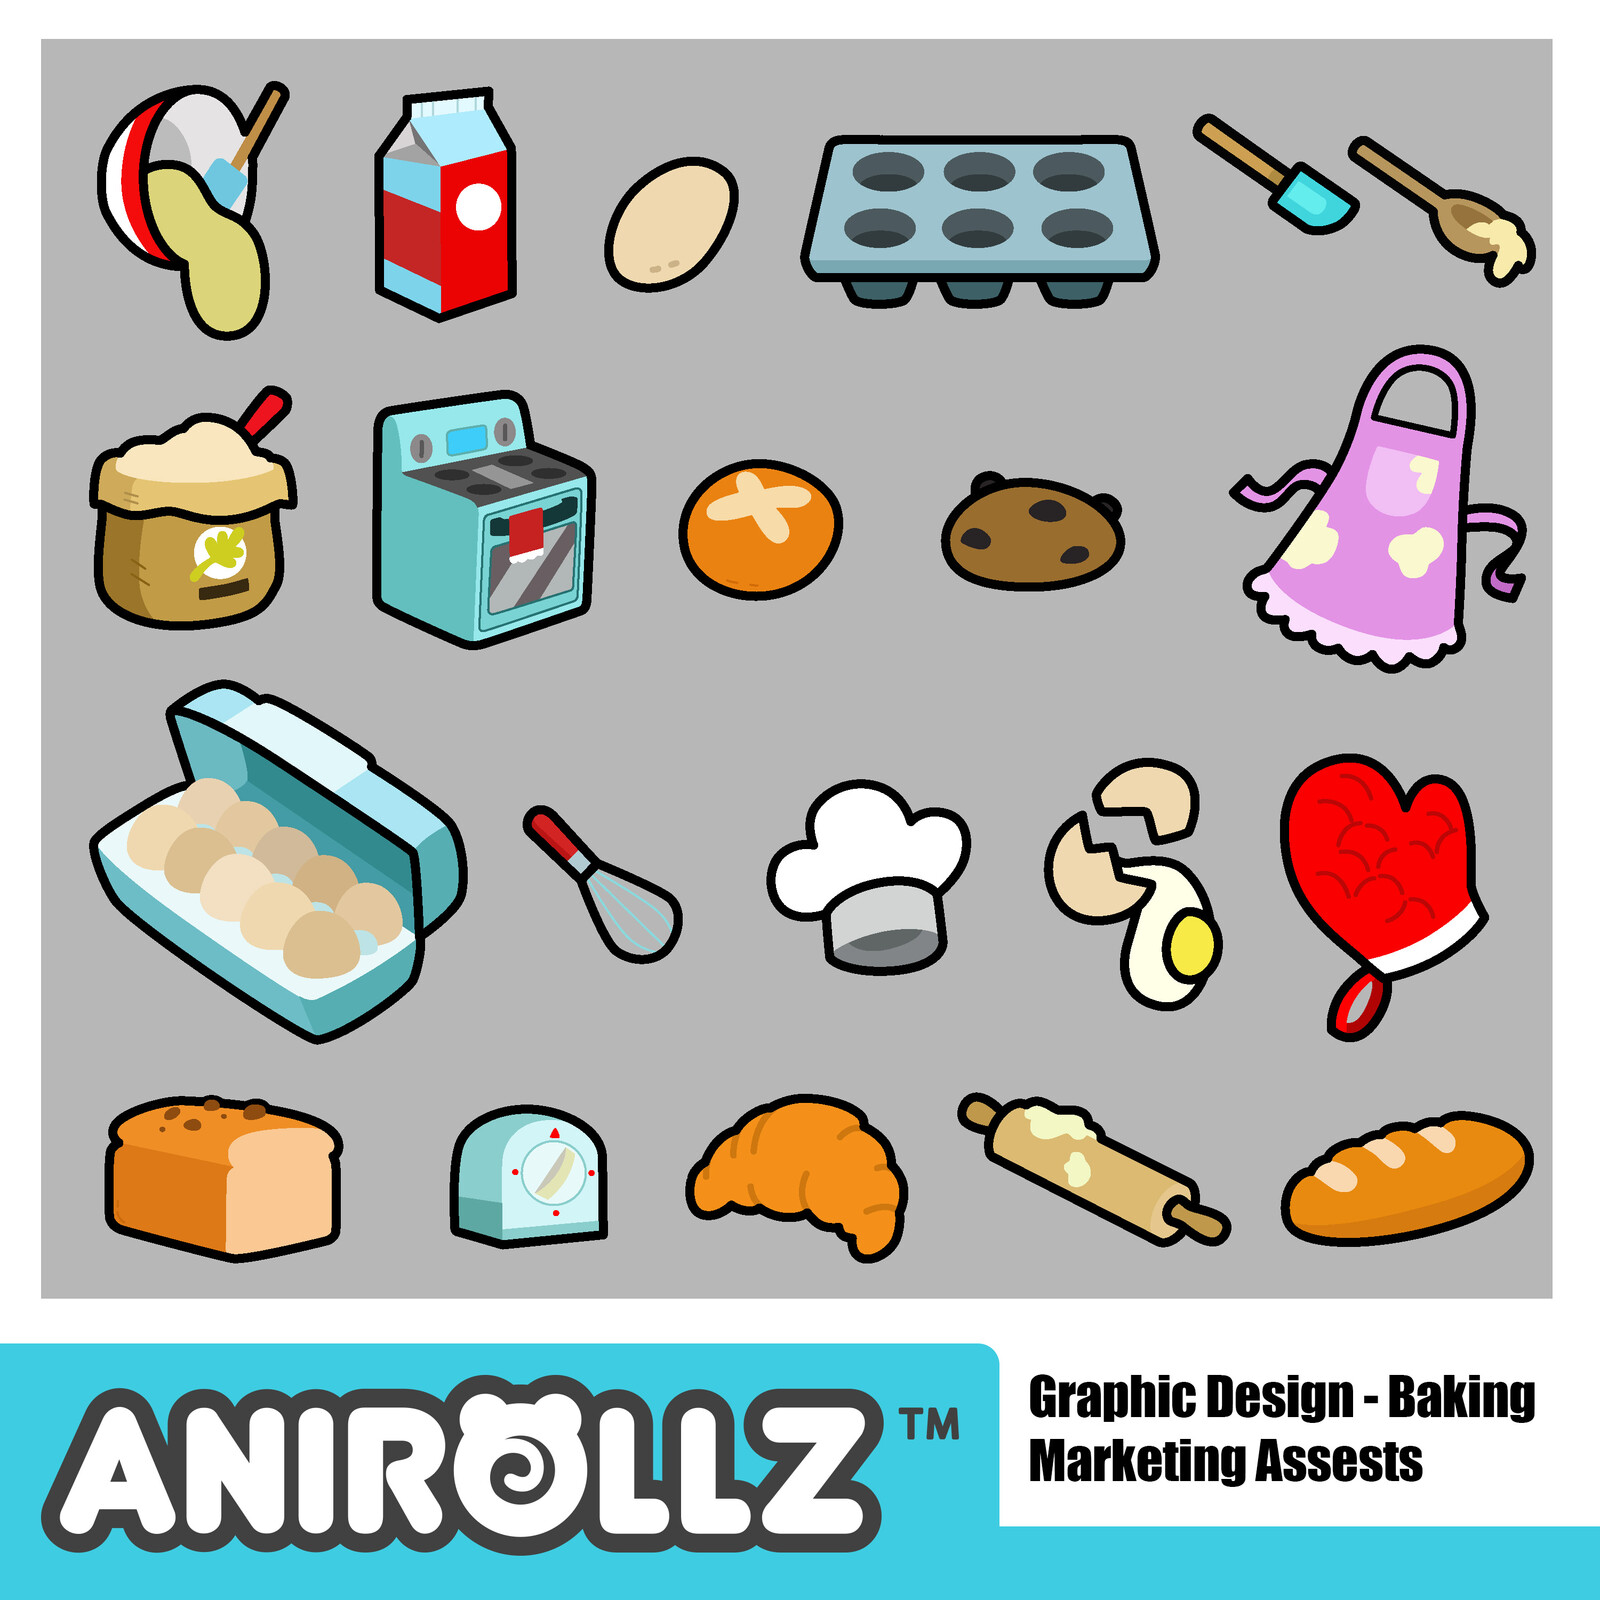 Anirollz - Graphic Designer - Social Media Content